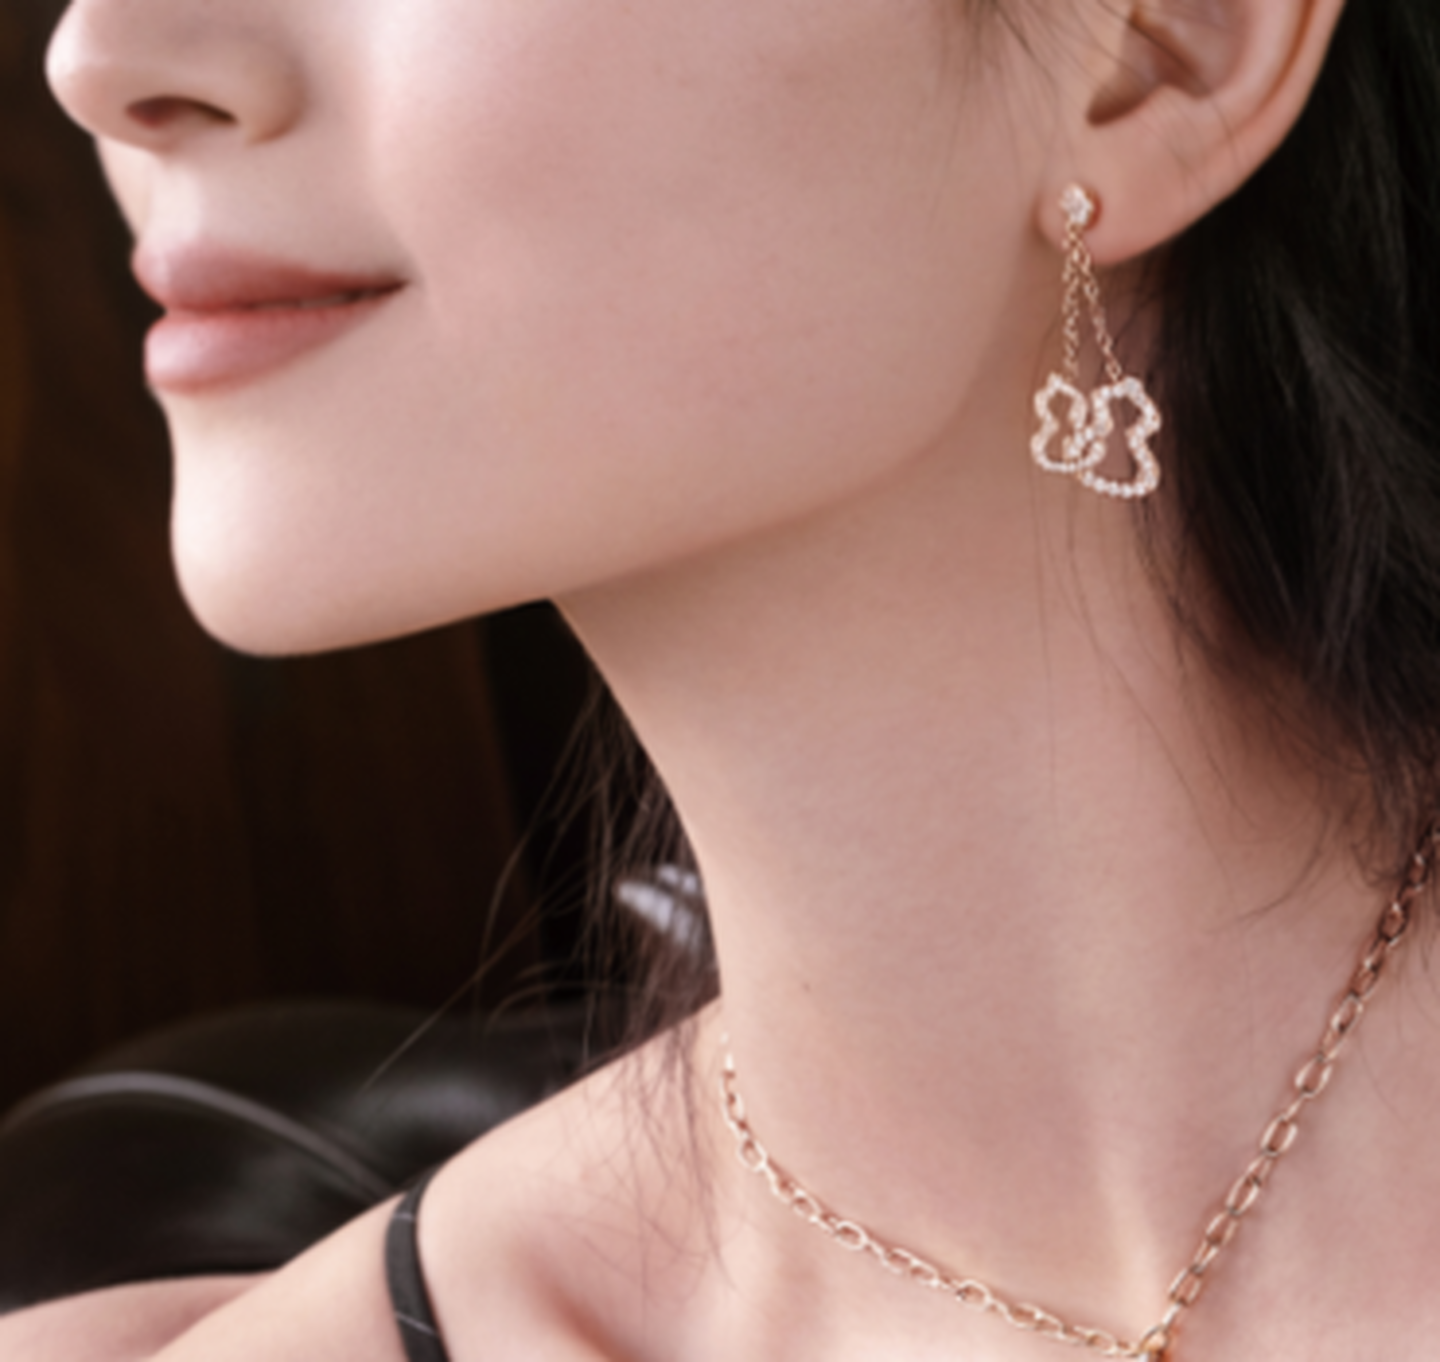 Wulu gold and diamond drop earrings on a woman.